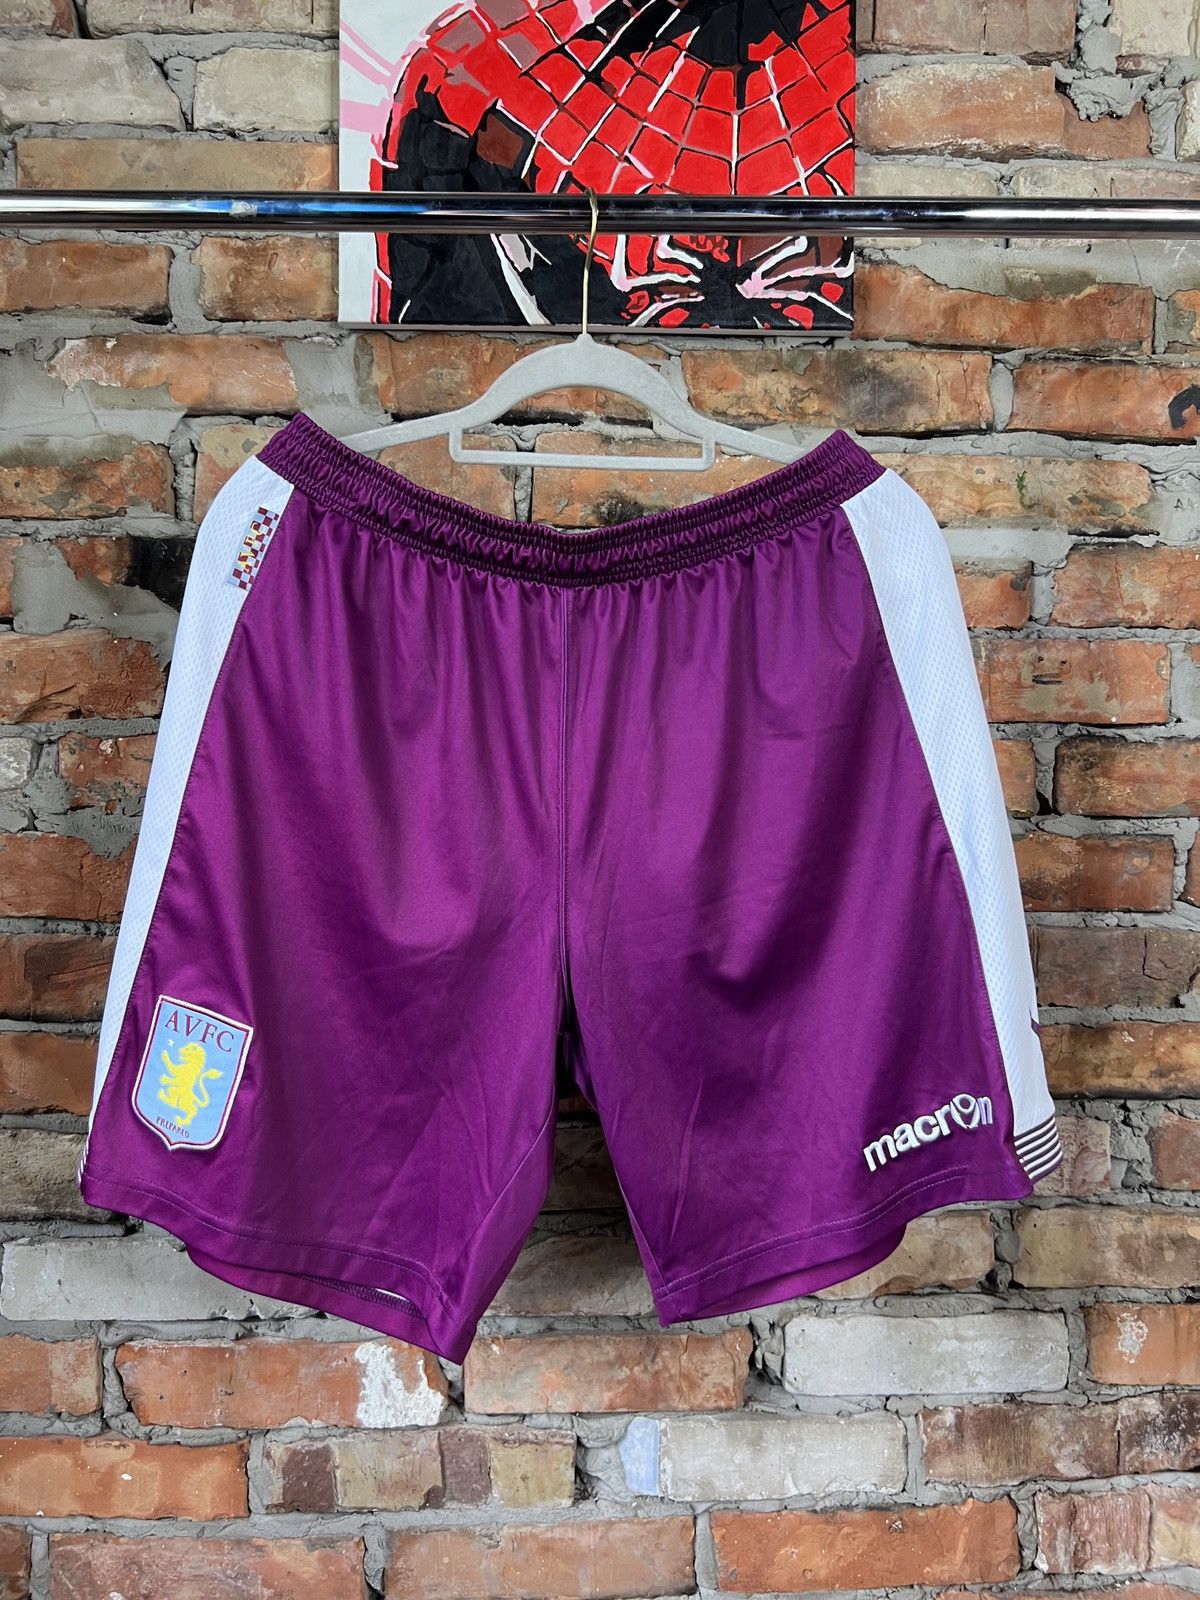 Soccer Jersey Macron Aston Villa Football Shorts Home Kit Size L Size US 34 / EU 50 - 1 Preview